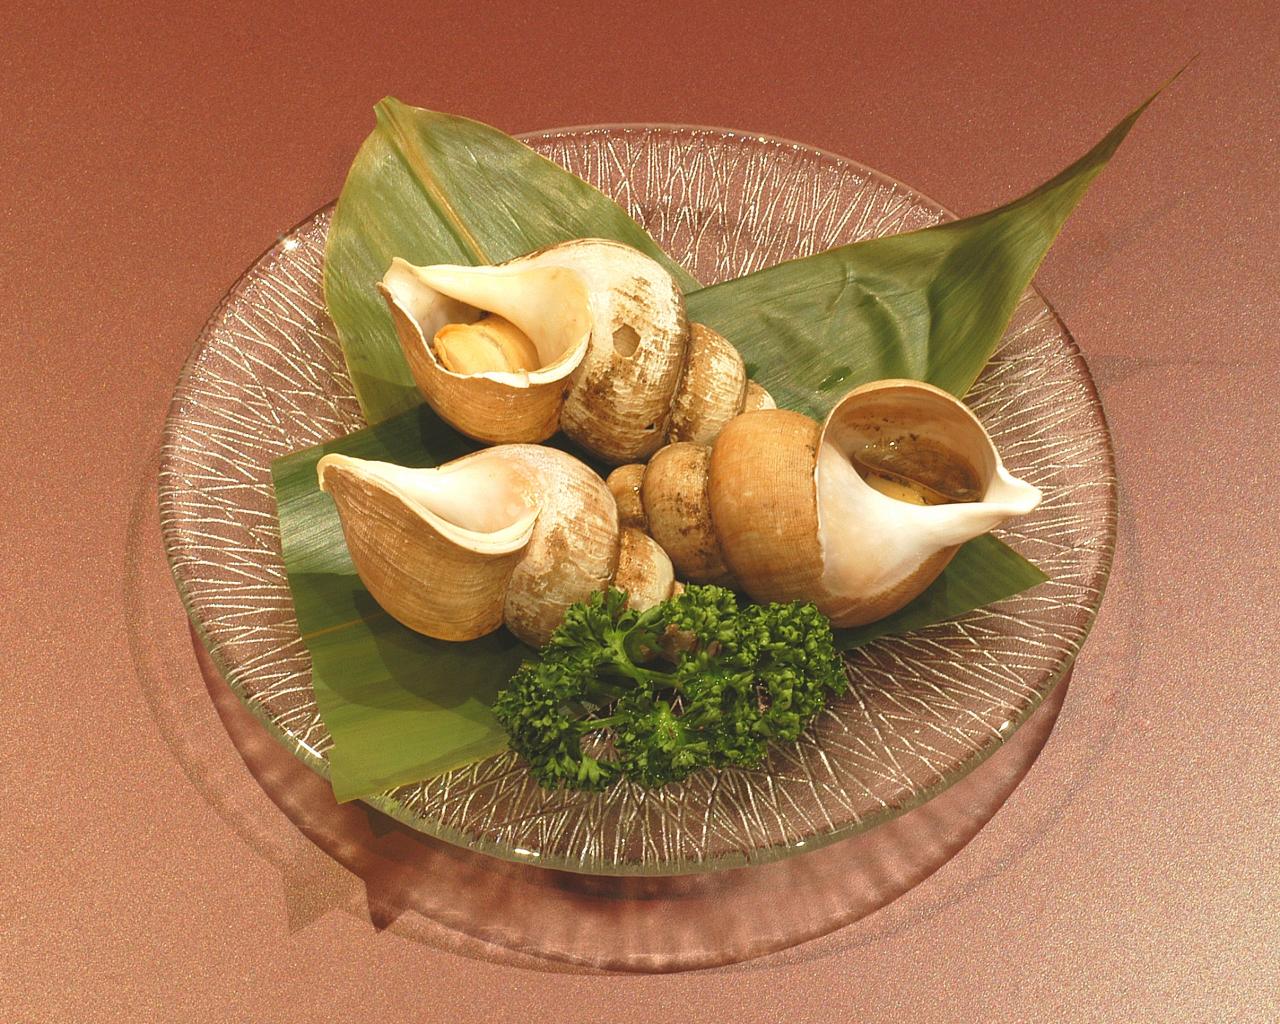 まんぷくメシ バイ貝の串焼きの作り方 富山湾の幸 アユ バイ貝 レシピ 凛とした暮らし 凛々と